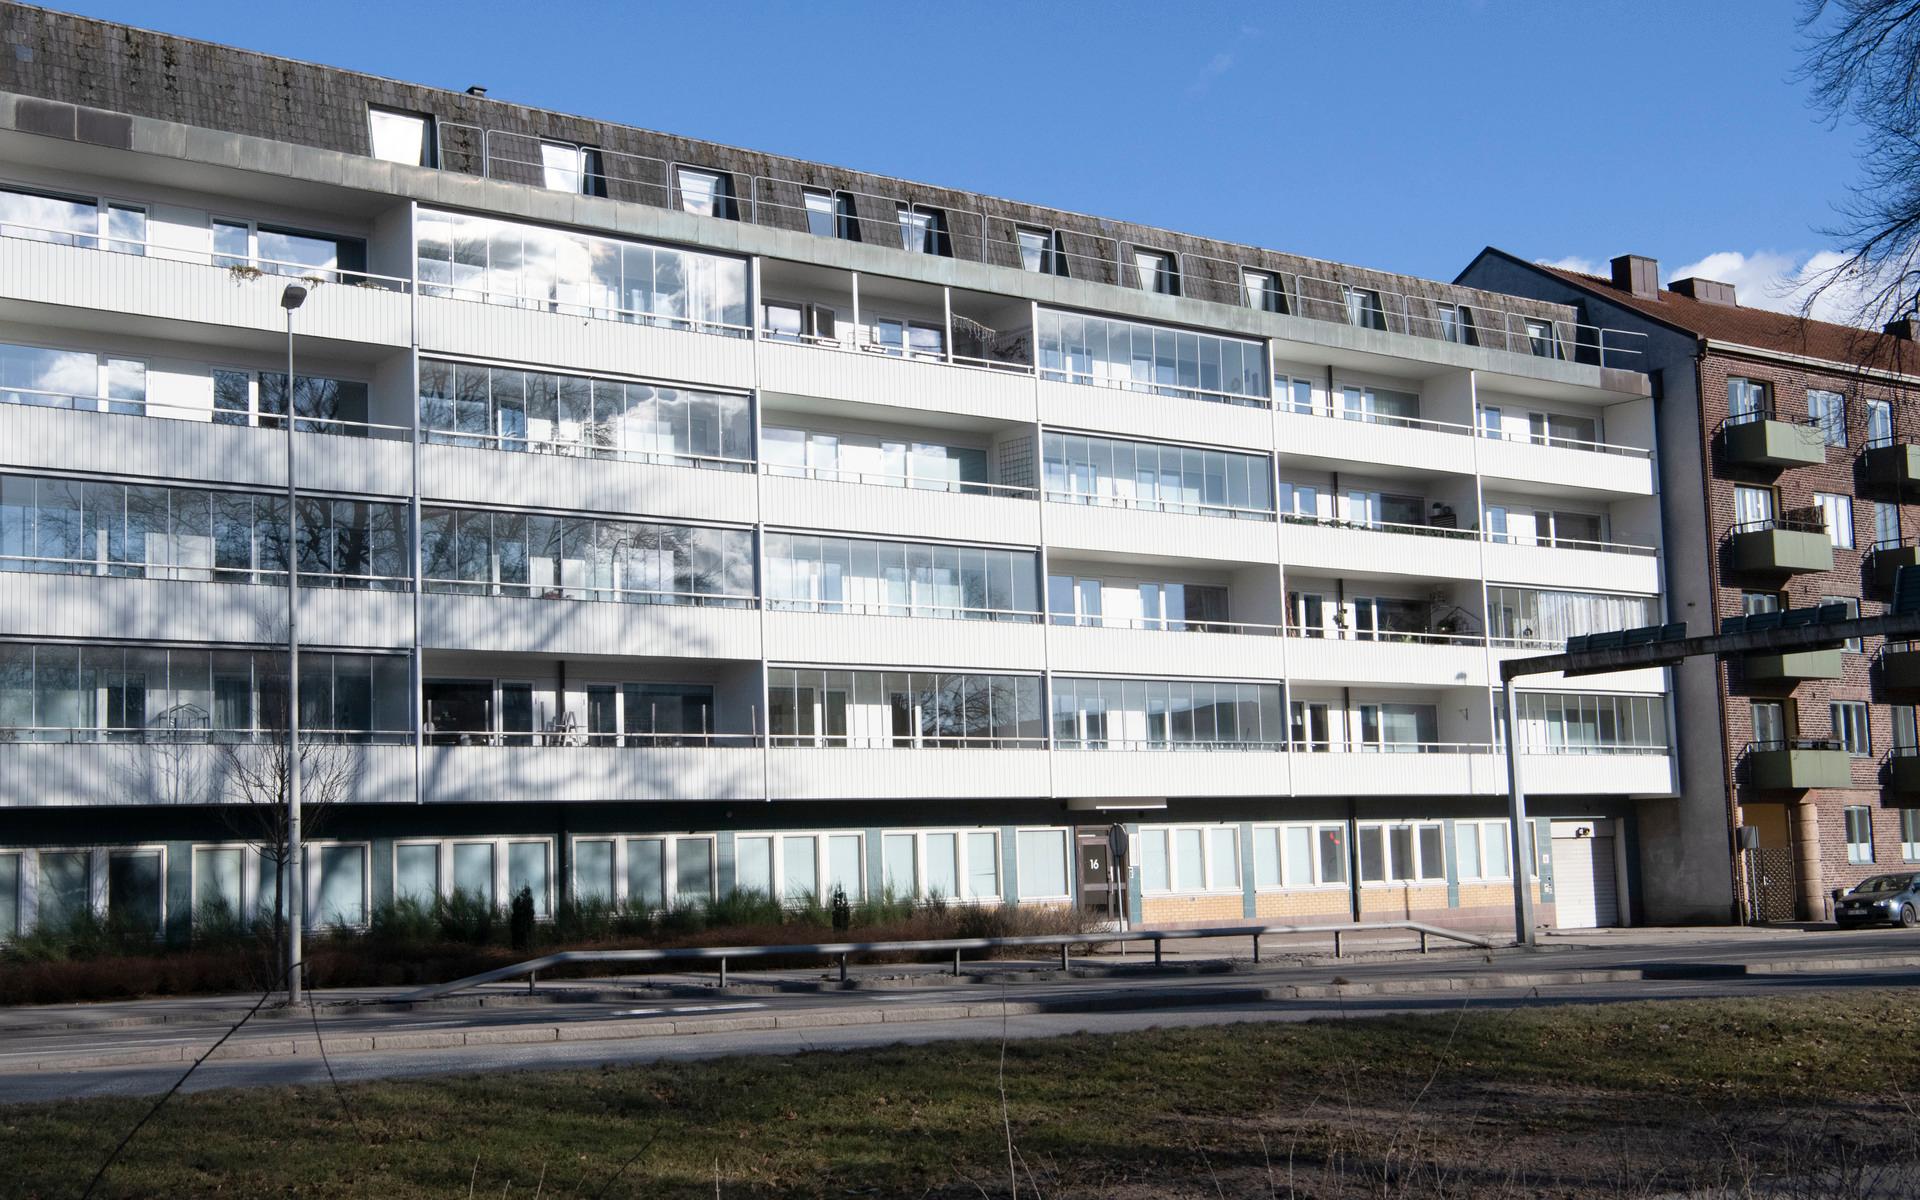 De 41 lägenheterna i det här huset på Badhusgatan säljs nu av HFAB. Huset byggdes 1969 och ligger precis där Järnvägsleden övergår i Norra infartsleden